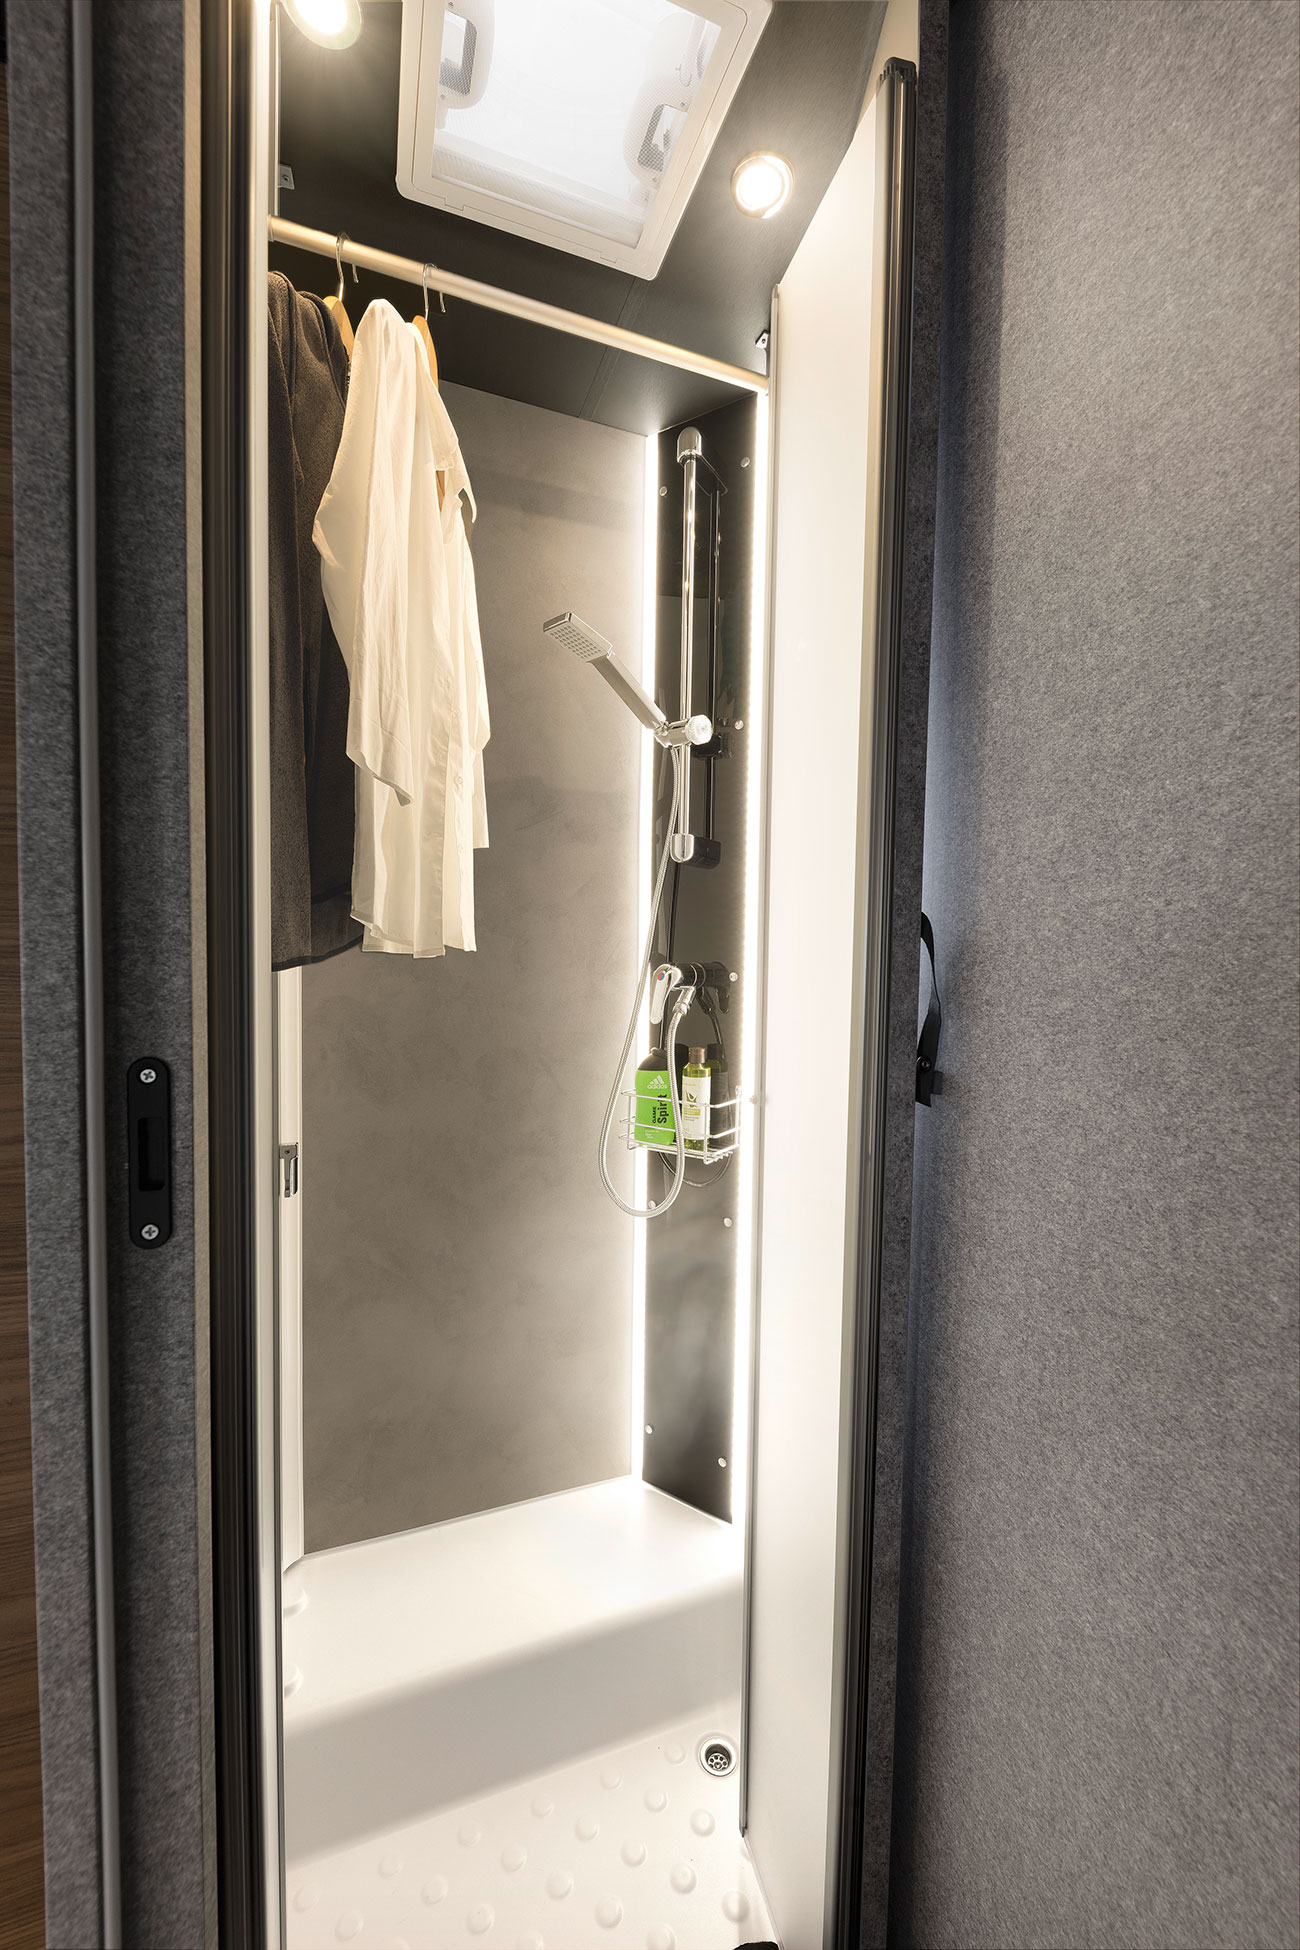 Nieużywany prysznic można wykorzystywać jako pomieszczenie do suszenia mokrych ubrań lub po prostu jako dodatkową szafę na ubrania.